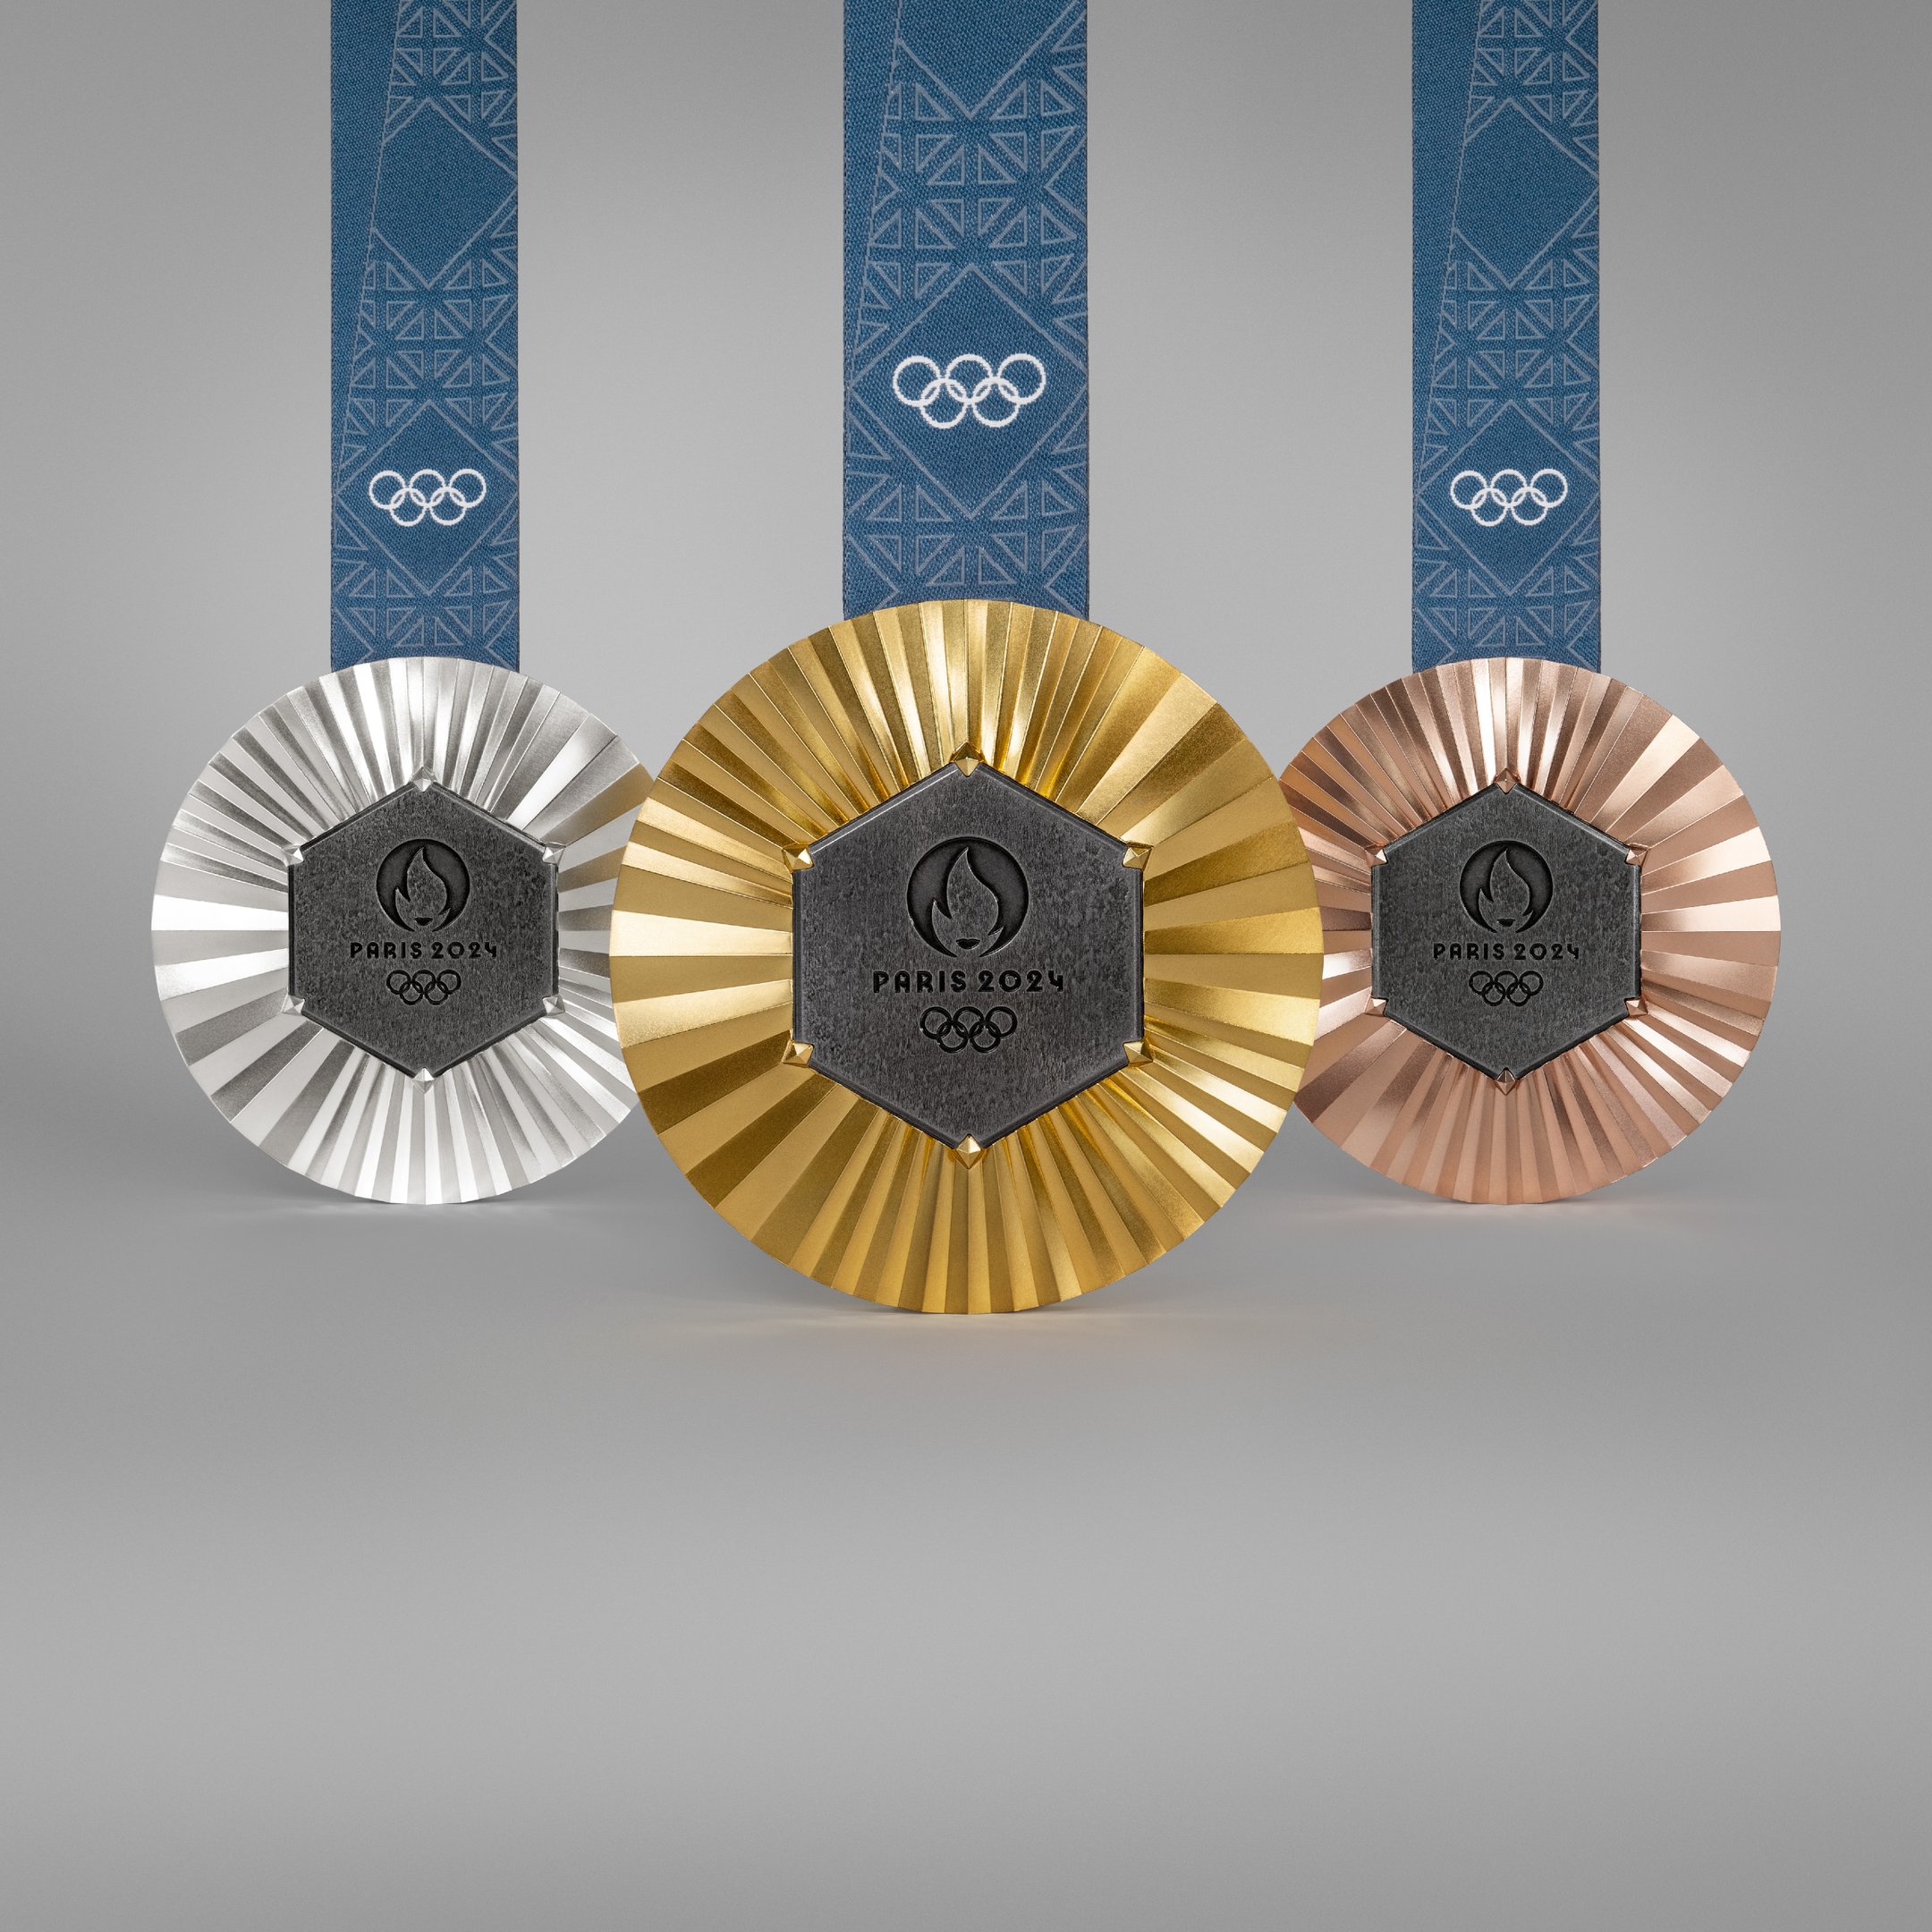 Cada medalha olímpica e paraolímpica é incrustada com um pedaço de ferro original da Torre Eiffel